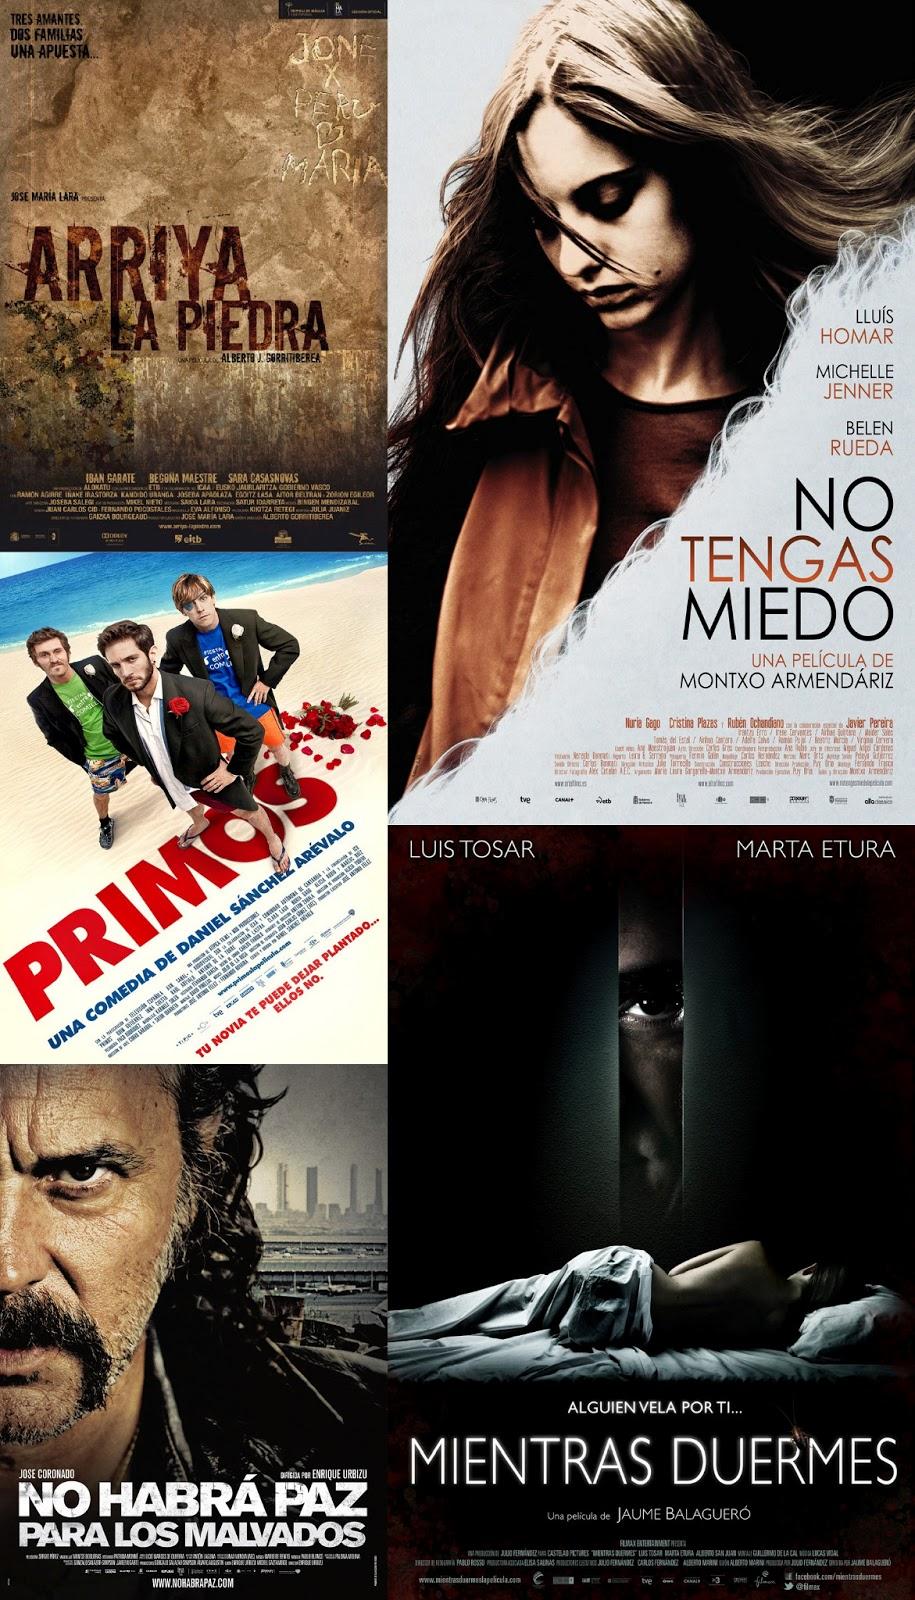 Cartel películas, Ciclo de Cine “Contemporáneos” Cine español actual